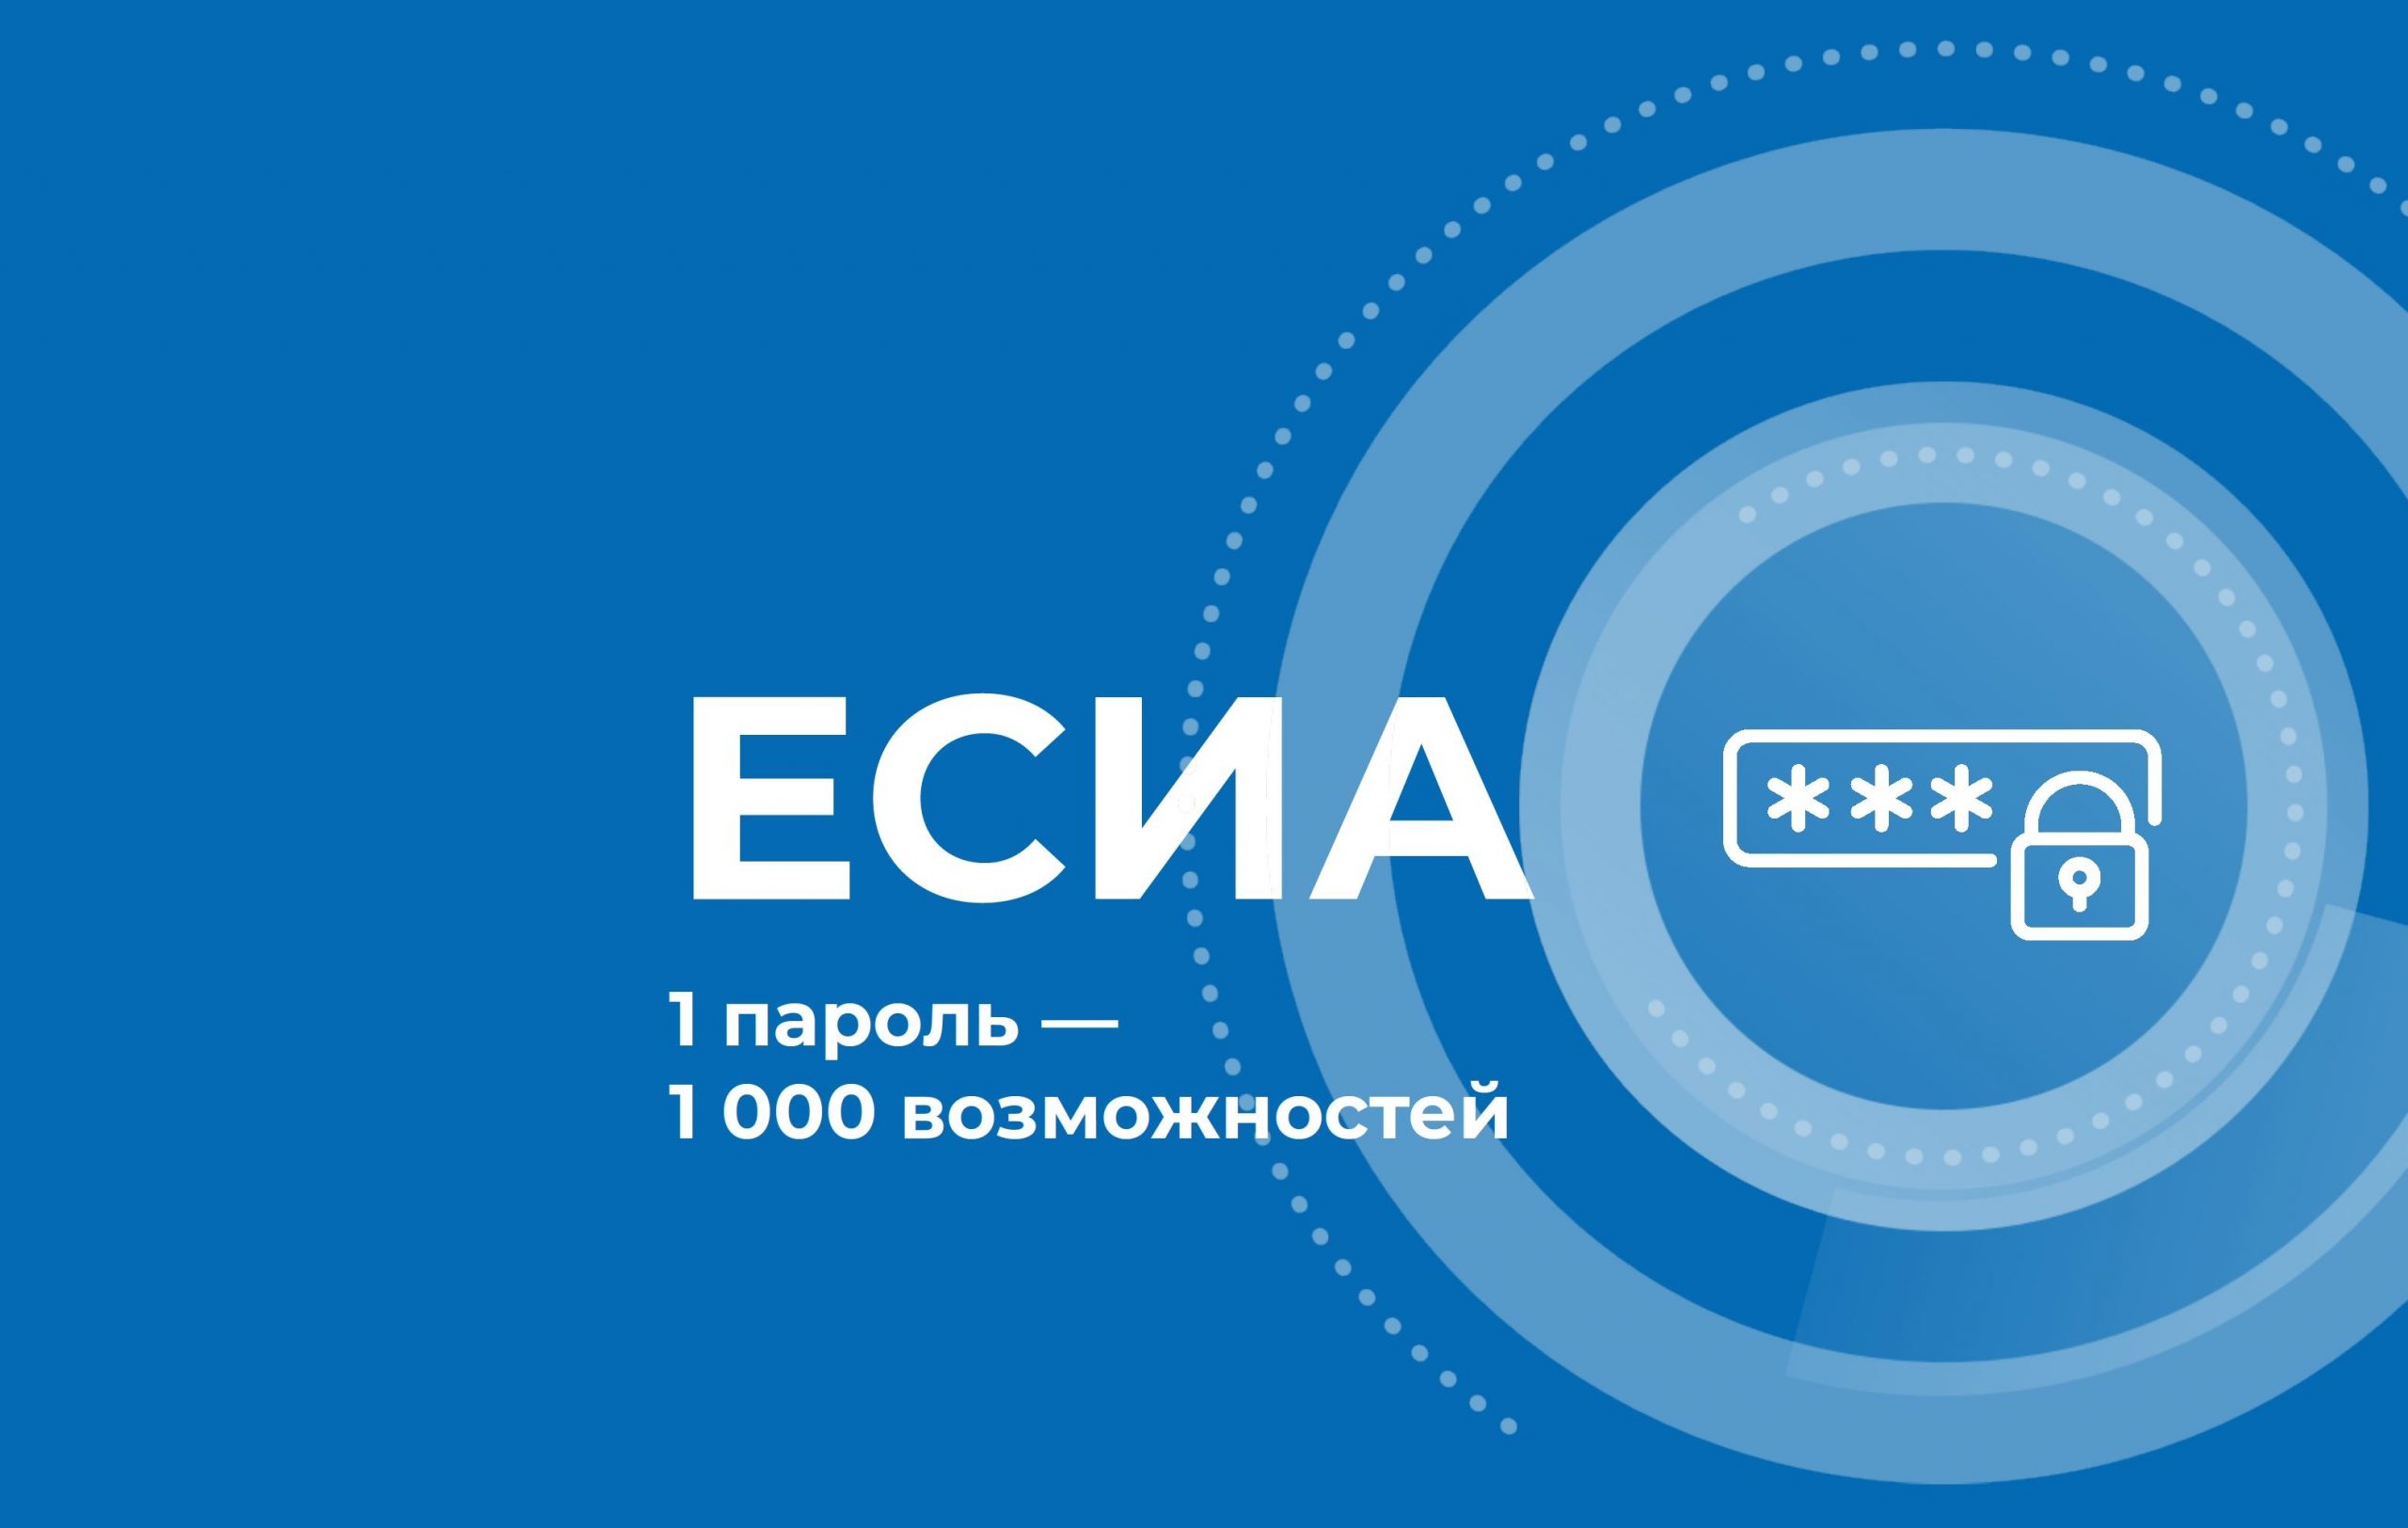 hh.ru, Авто.ру и ЦИАН запустили авторизацию через ЕСИА 1